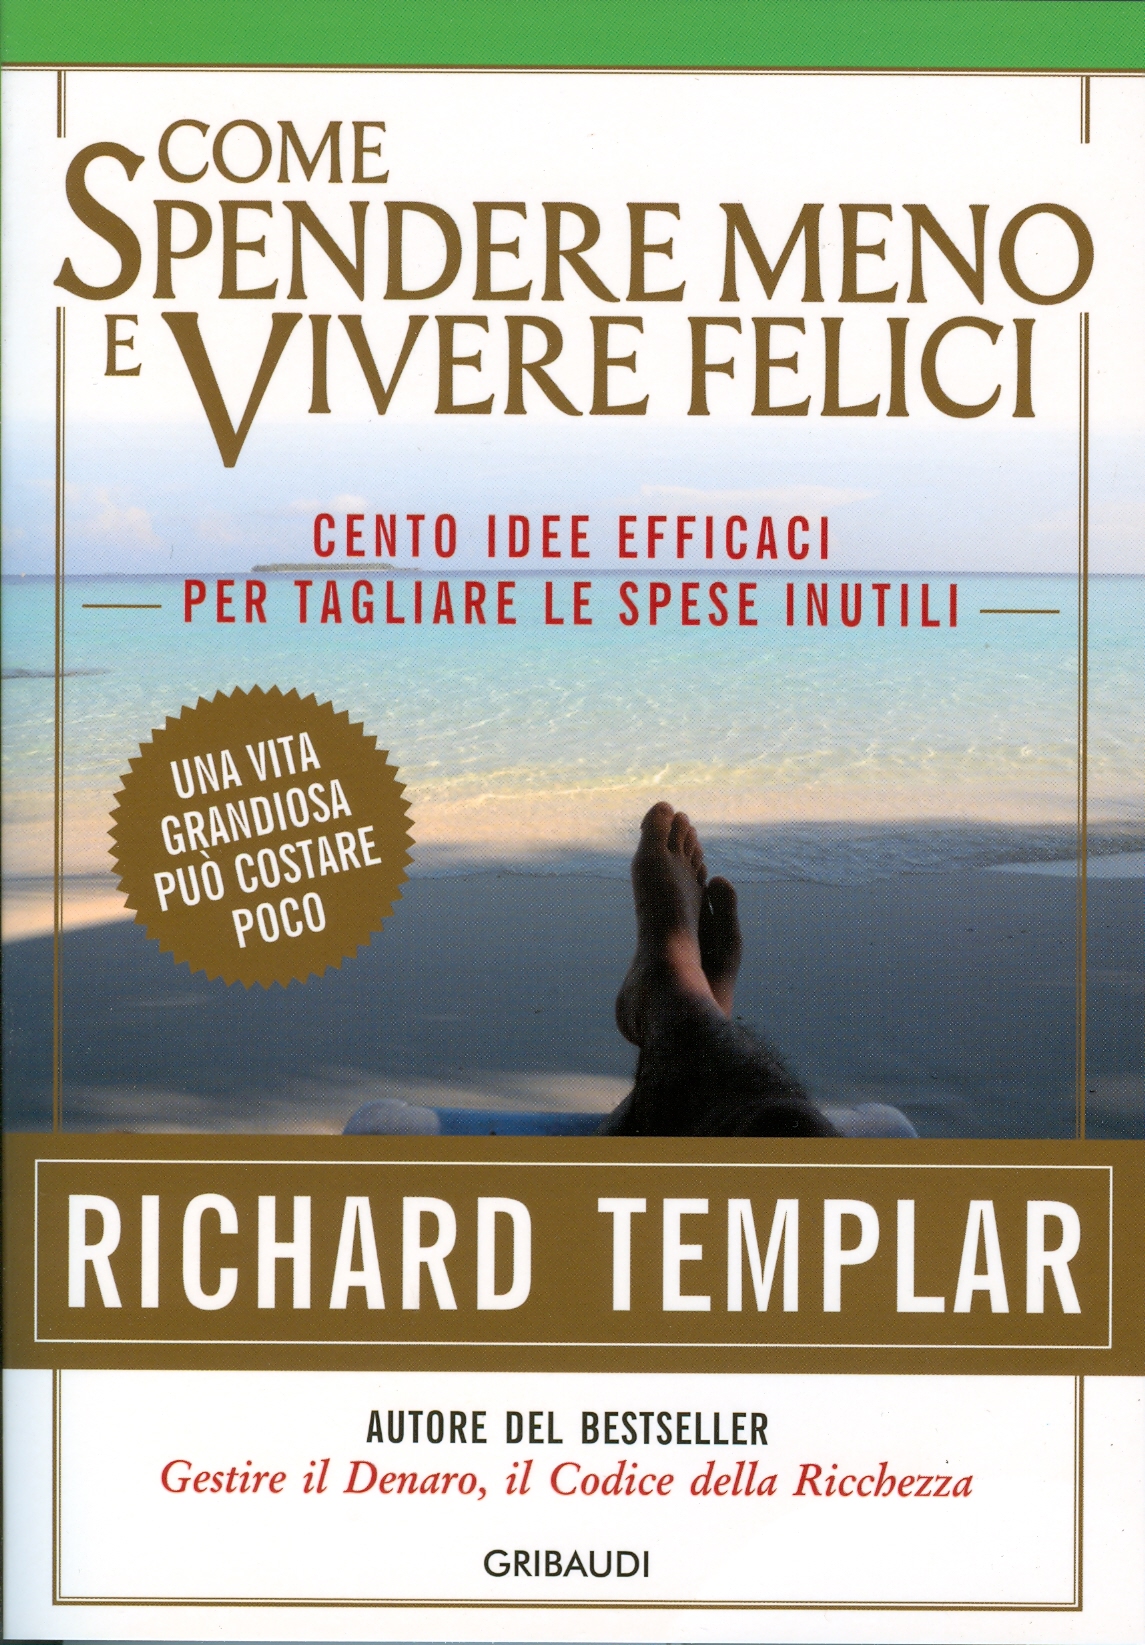 Richard Templar - Come spendere meno e vivere felici - Clicca l'immagine per chiudere